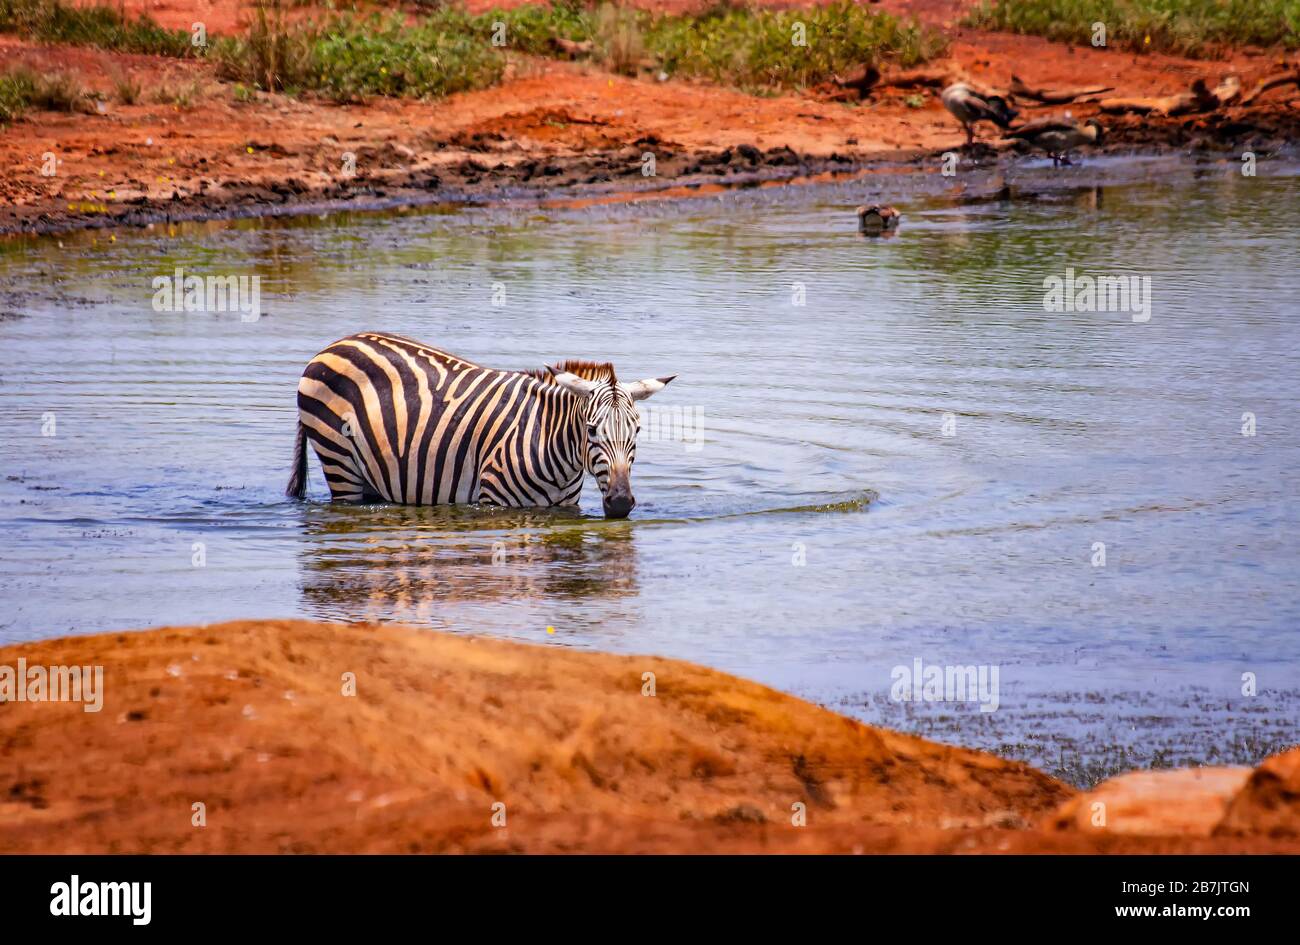 Zèbre de Grevy debout dans l'eau dans un lac. Baignez, rafraîchissez et buvez. C'est une photo de la faune sauvage en Afrique, au Kenya, dans le parc national de Tsavo East. C'est un baut Banque D'Images